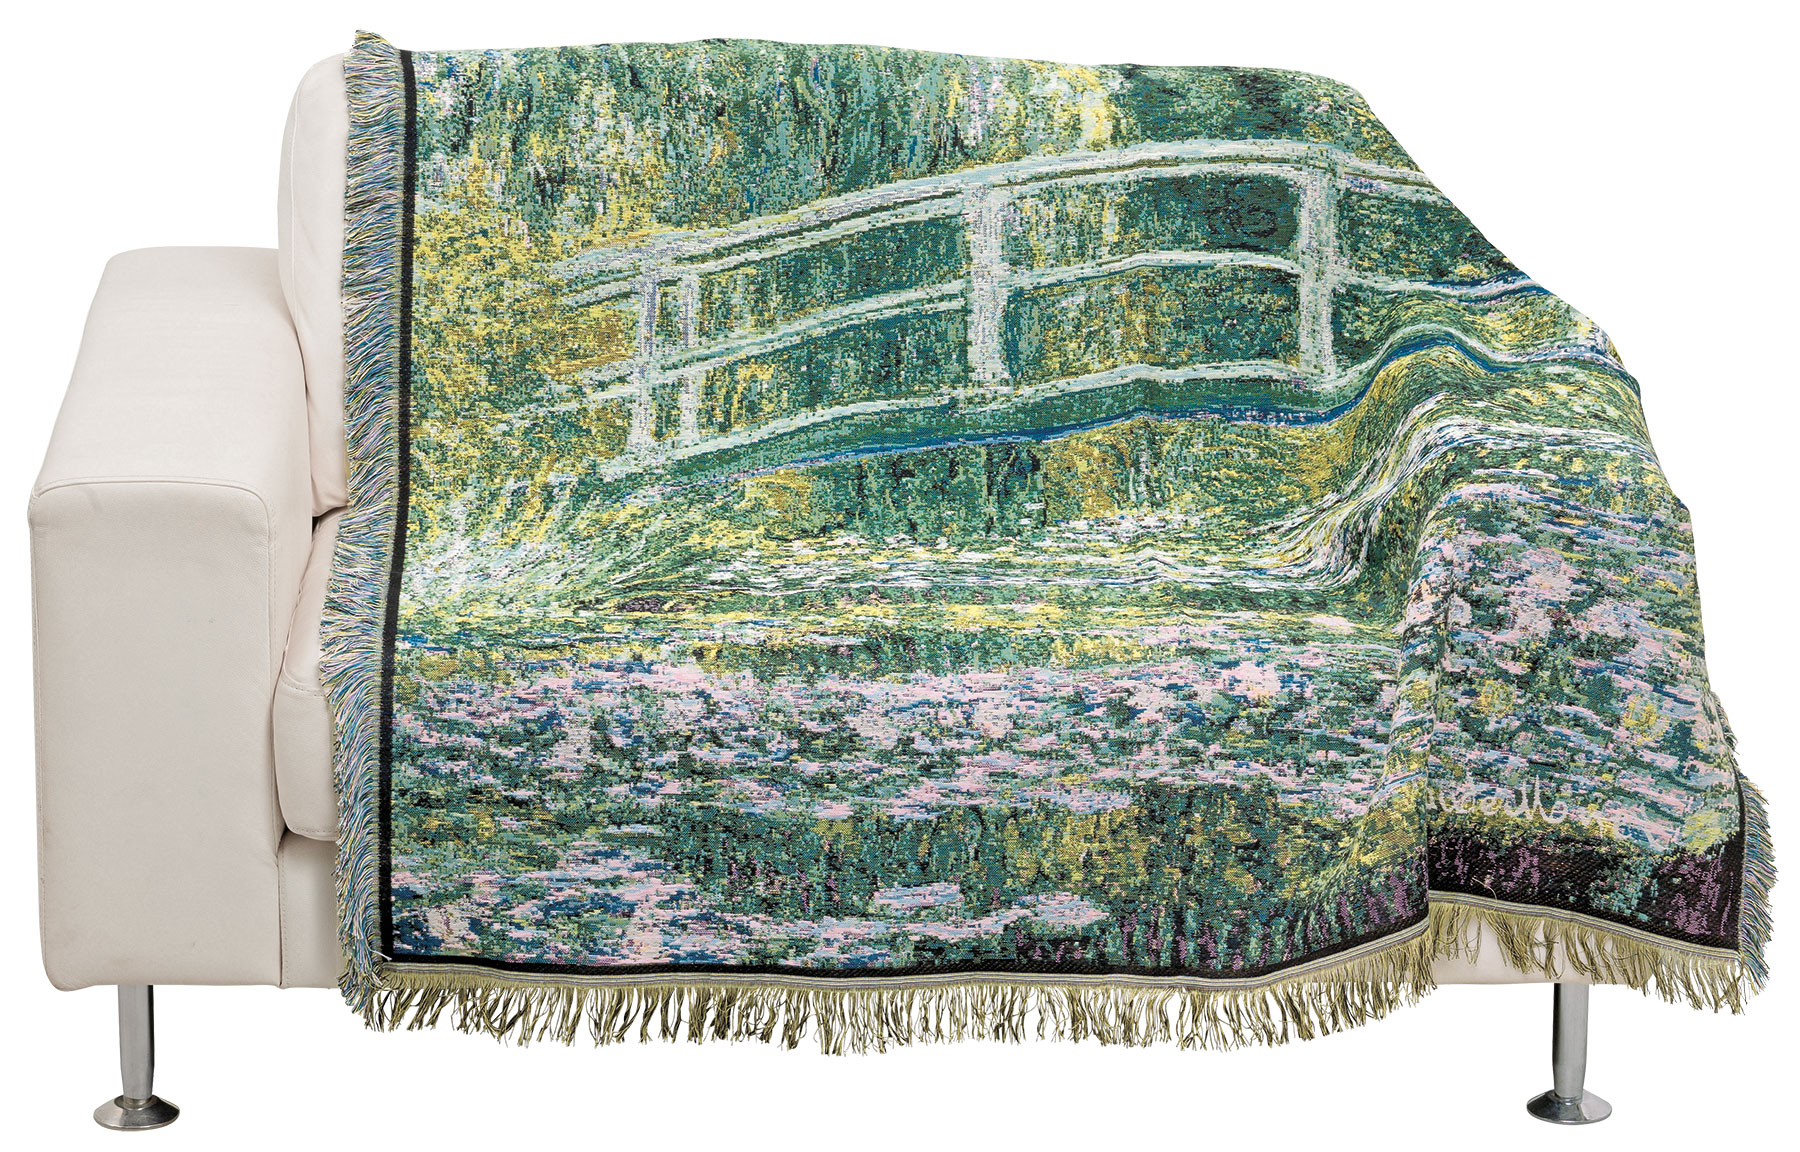 Wohnplaid "Der Seerosenteich" (1899) von Claude Monet